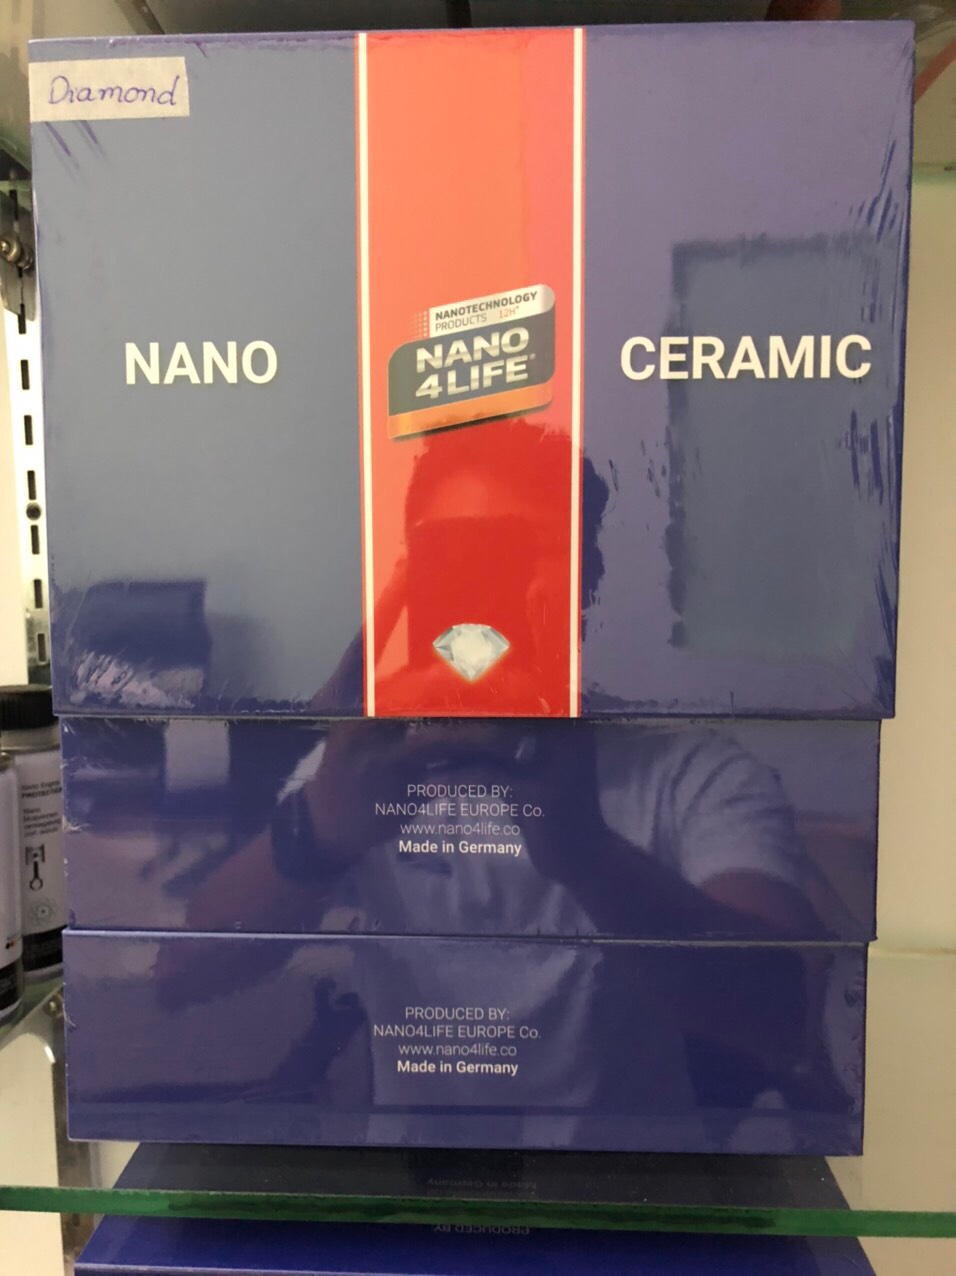 Nano 4life 12h - Ceramic 12h, ceramic phủ sơn ô tô